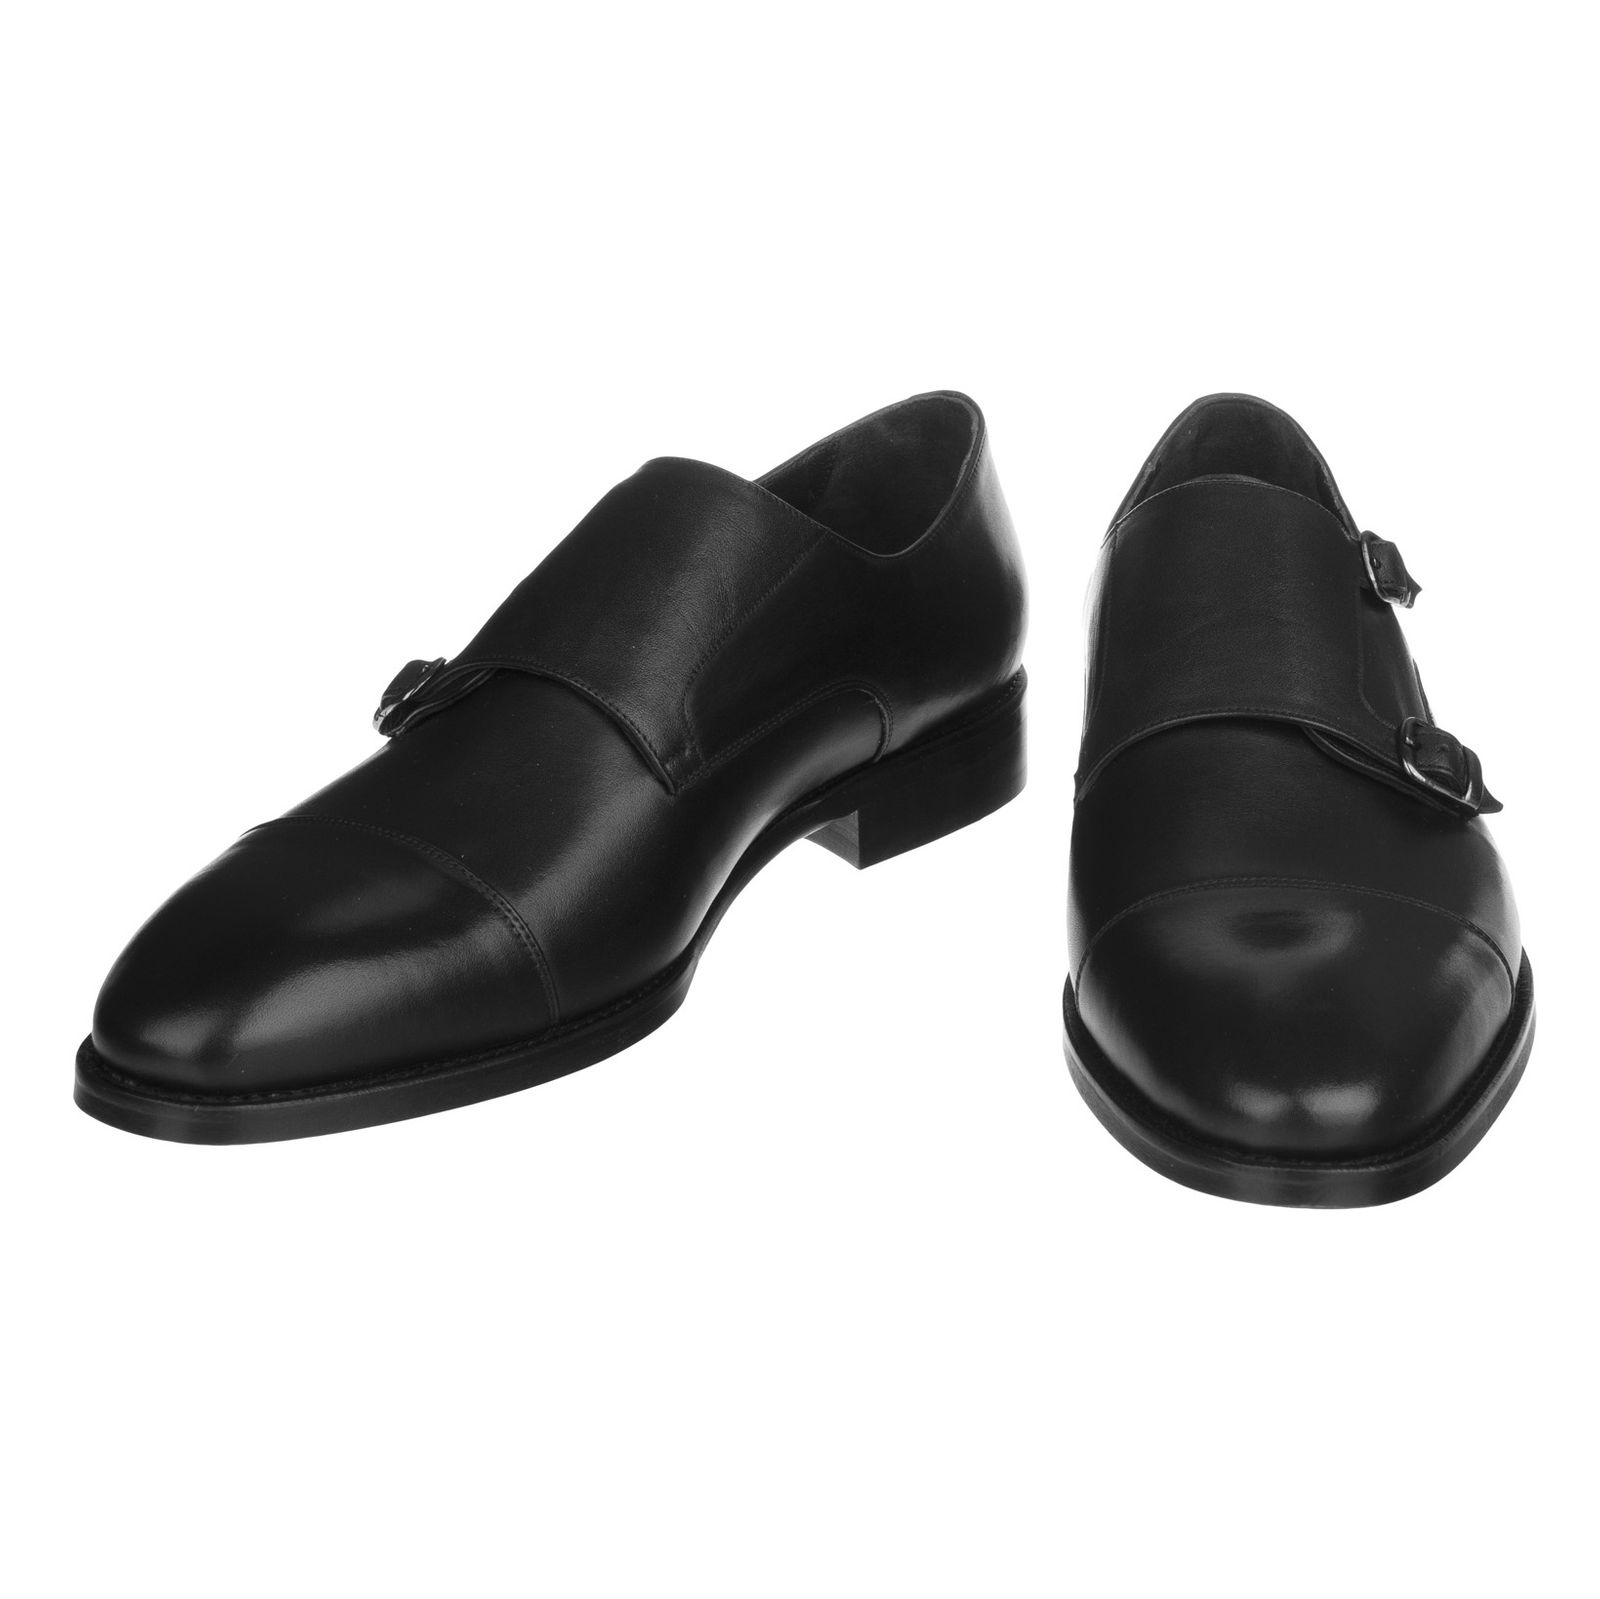 کفش مردانه گاندو مدل 99-723 - مشکی - 4